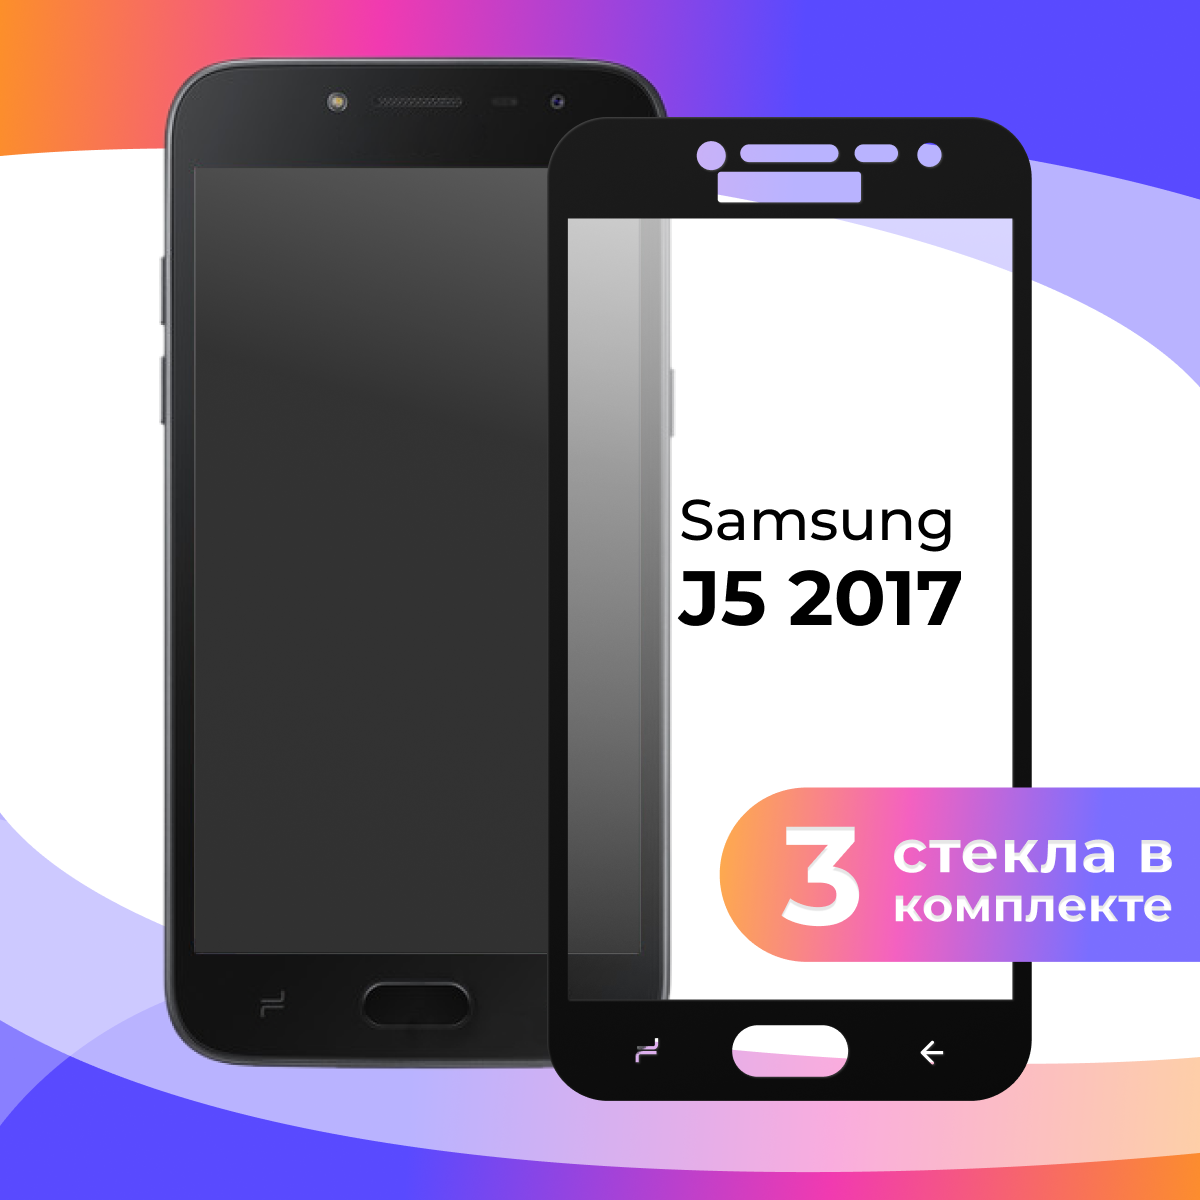 Комплект 3 шт. Защитное стекло для телефона Samsung Galaxy J5 2017 / Глянцевое противоударное стекло с олеофобным покрытием на смартфон Самсунг Галакси Джи 5 2017